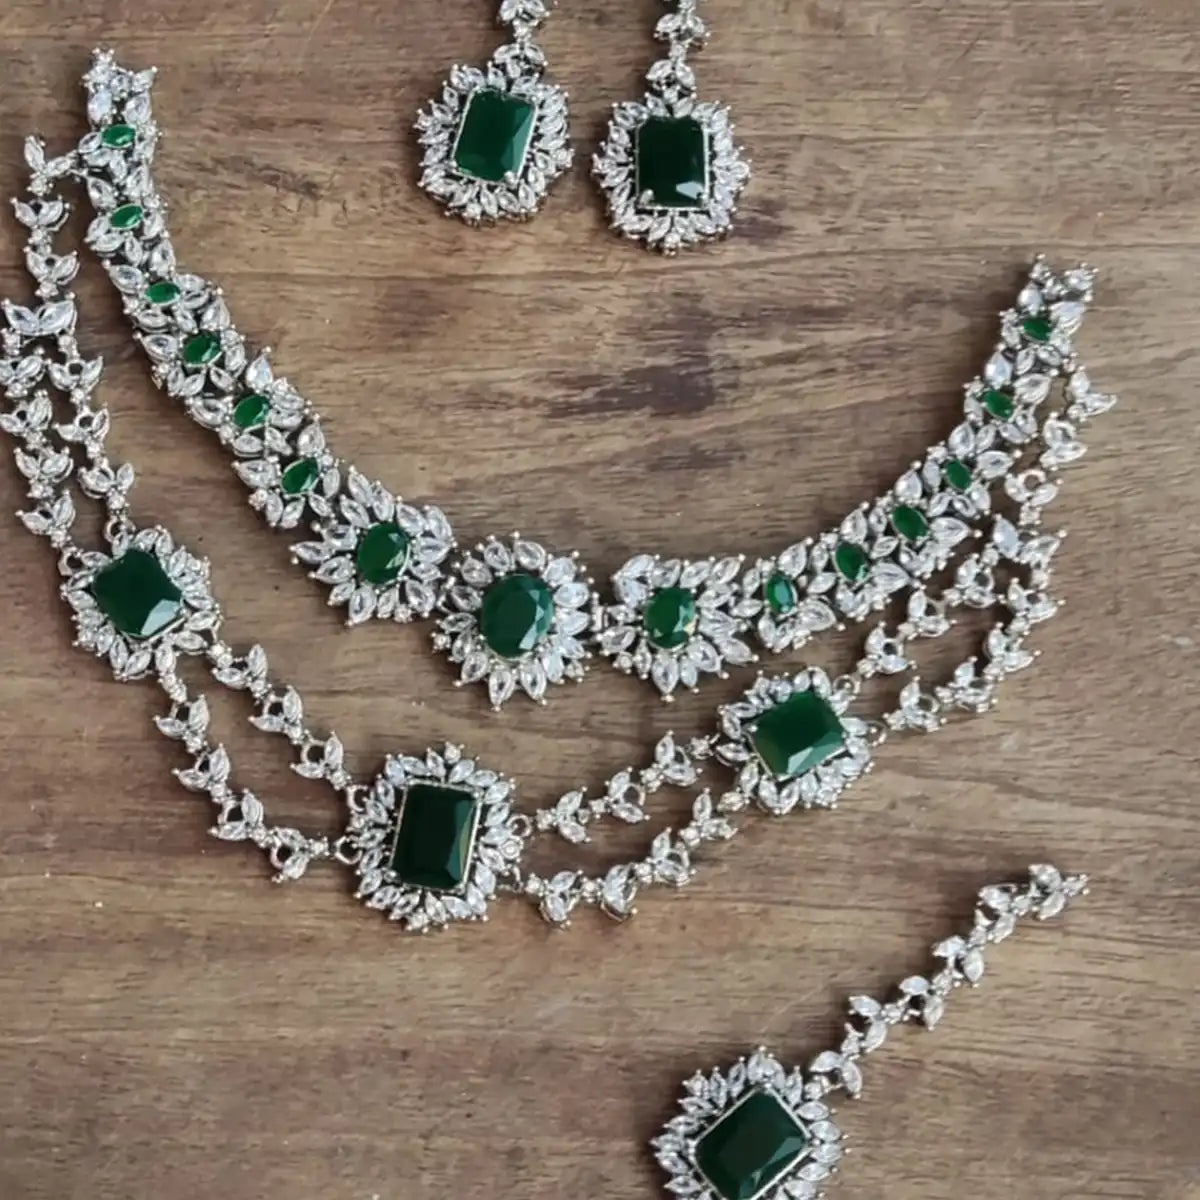 designer collor set jewellery online njc-011 green